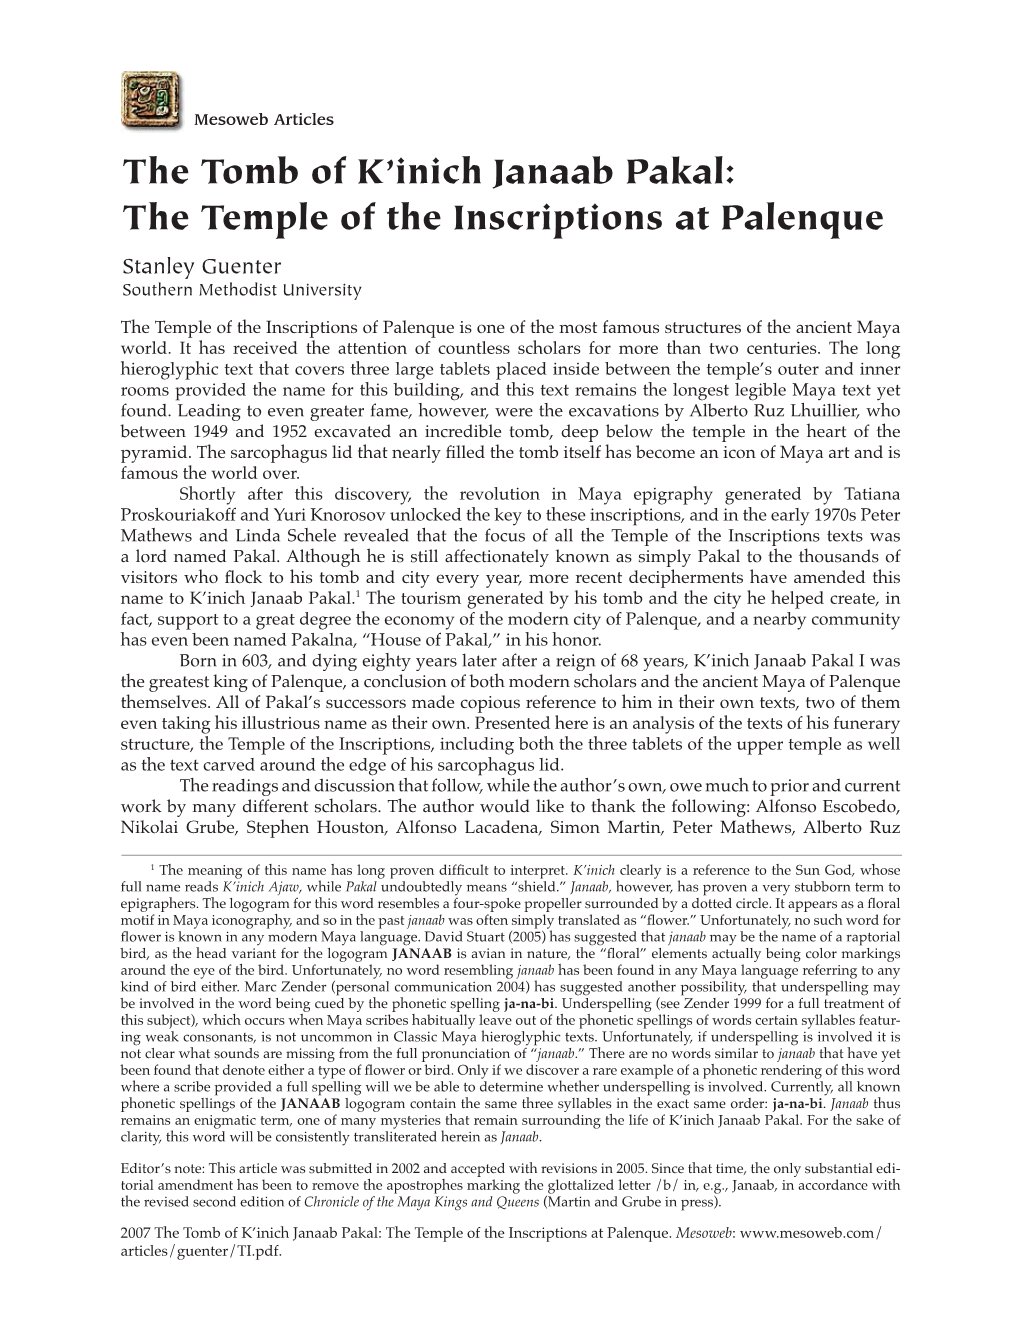 The Tomb of K'inich Janaab Pakal